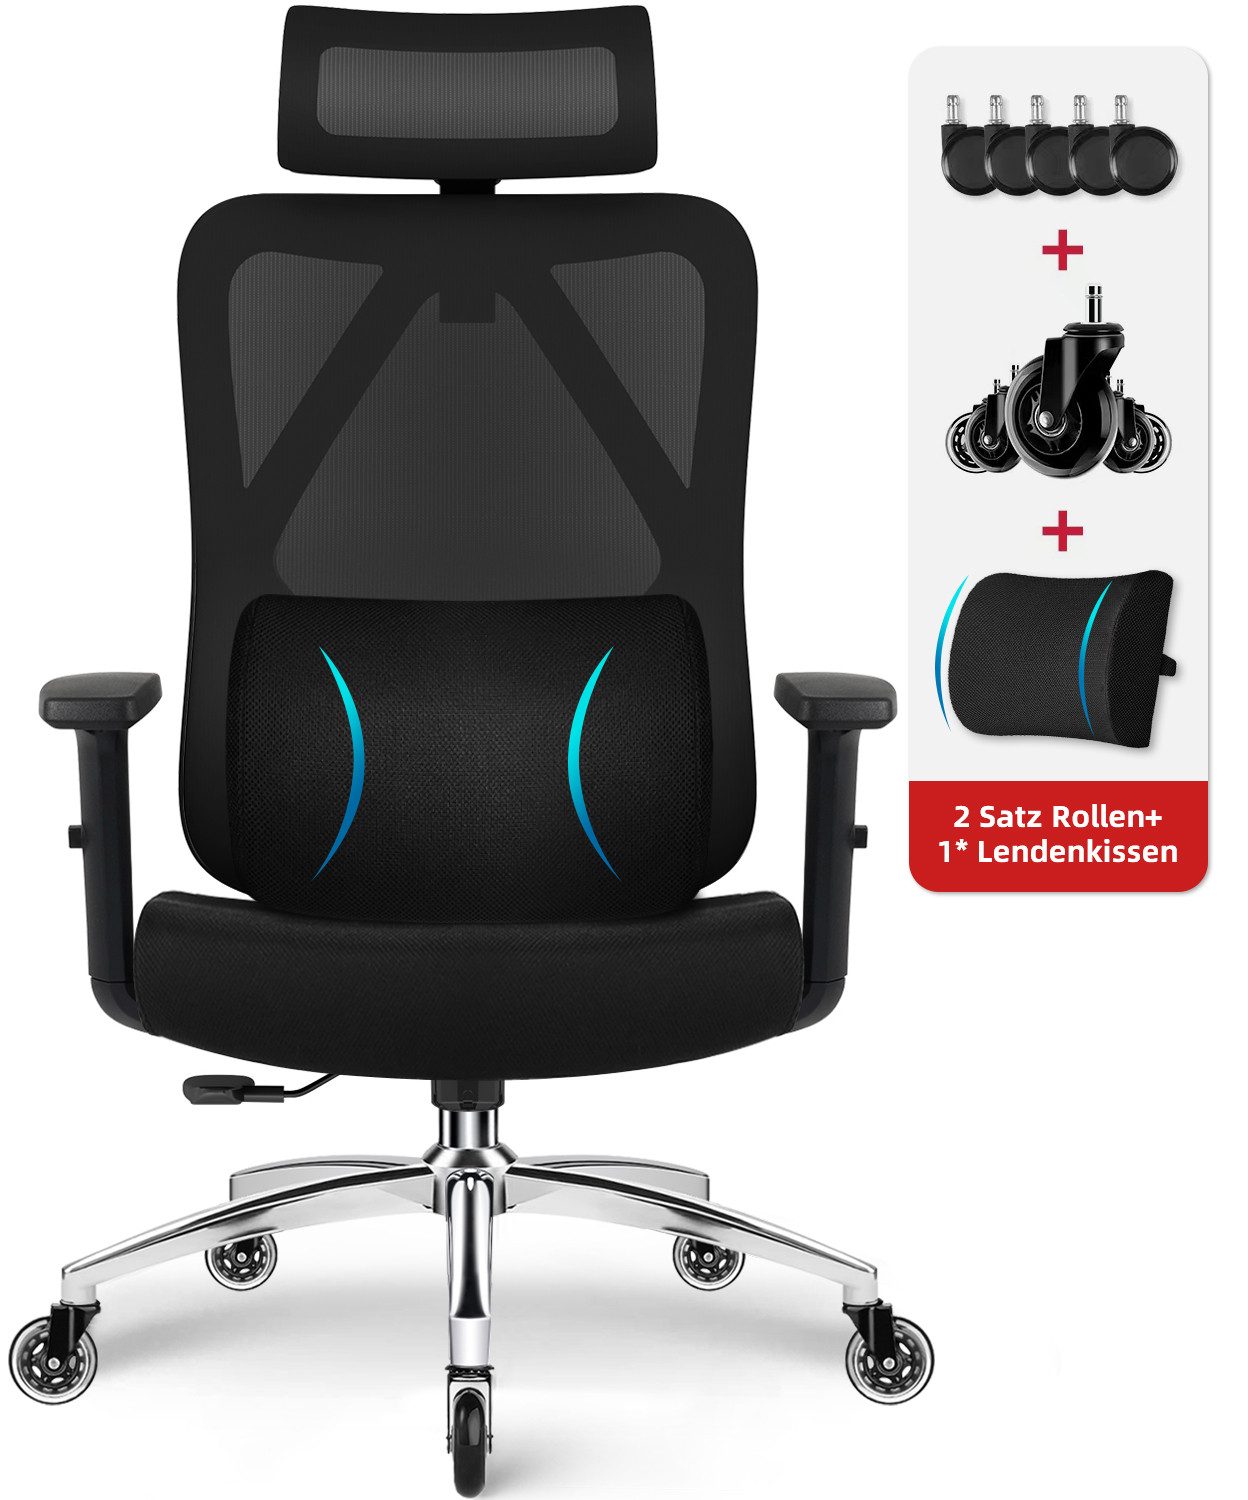 Lexzurn Bürostuhl Bürostuhl ergonomisch, Schreibtischstuhl Memory-Schaum Lendenstütze (Wippfunktion bis 135°, Bis 200kg Belastbar), Höhenverstellbarer Chefsessel Drehstuhl, Netzstuhl